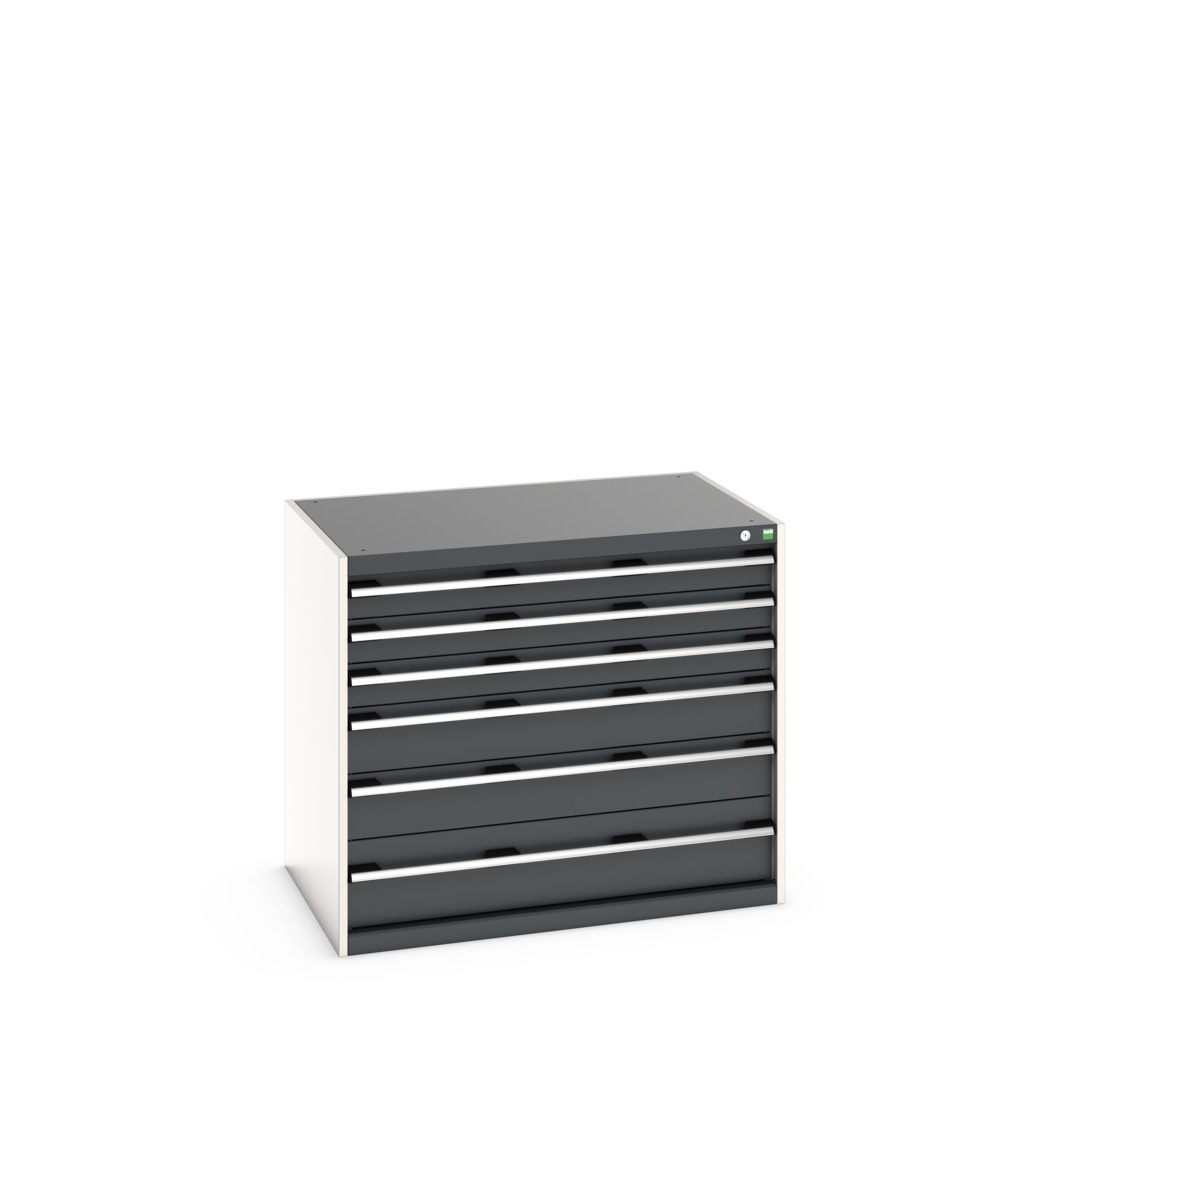 40029103.19V - cubio drawer cabinet